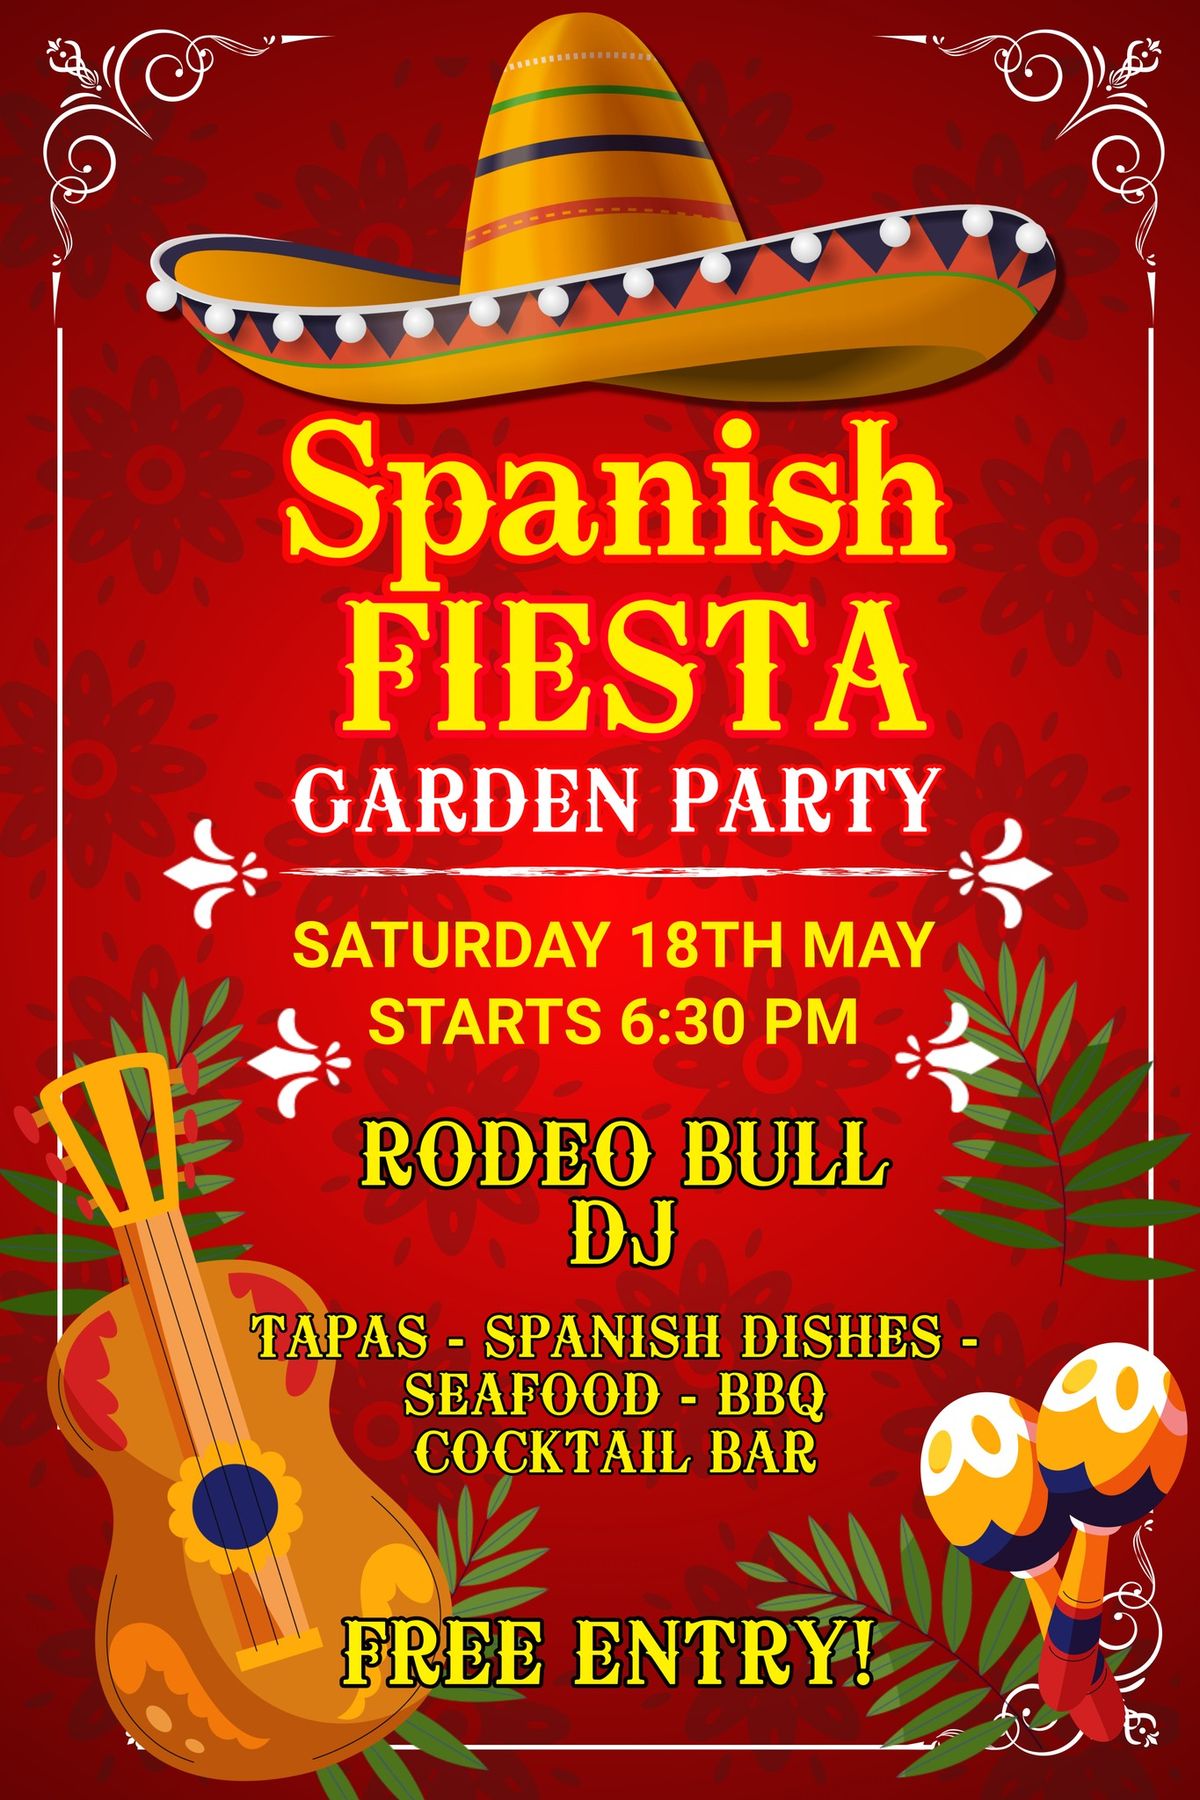 Spanish Fiesta - Garden Party